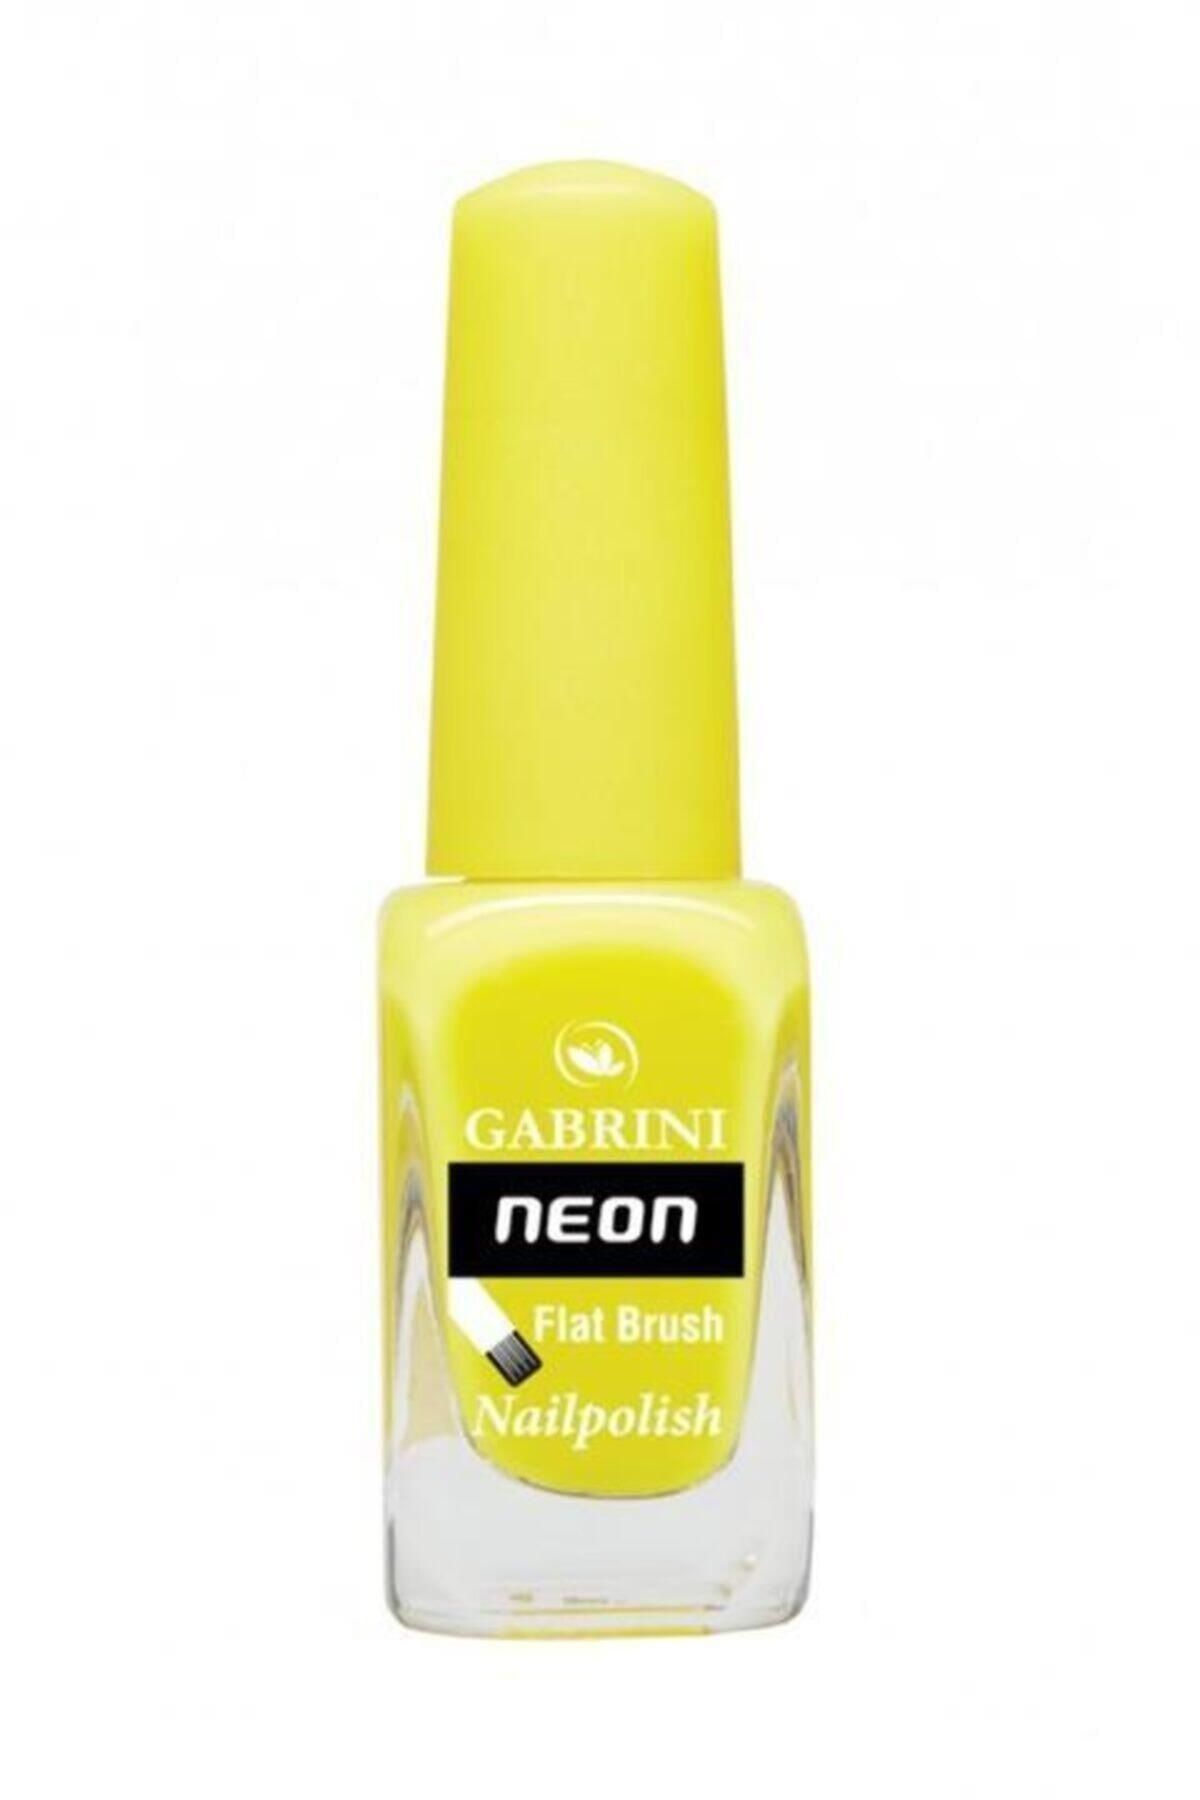 Gabrini Neon Flat Brush Nailpolish N12